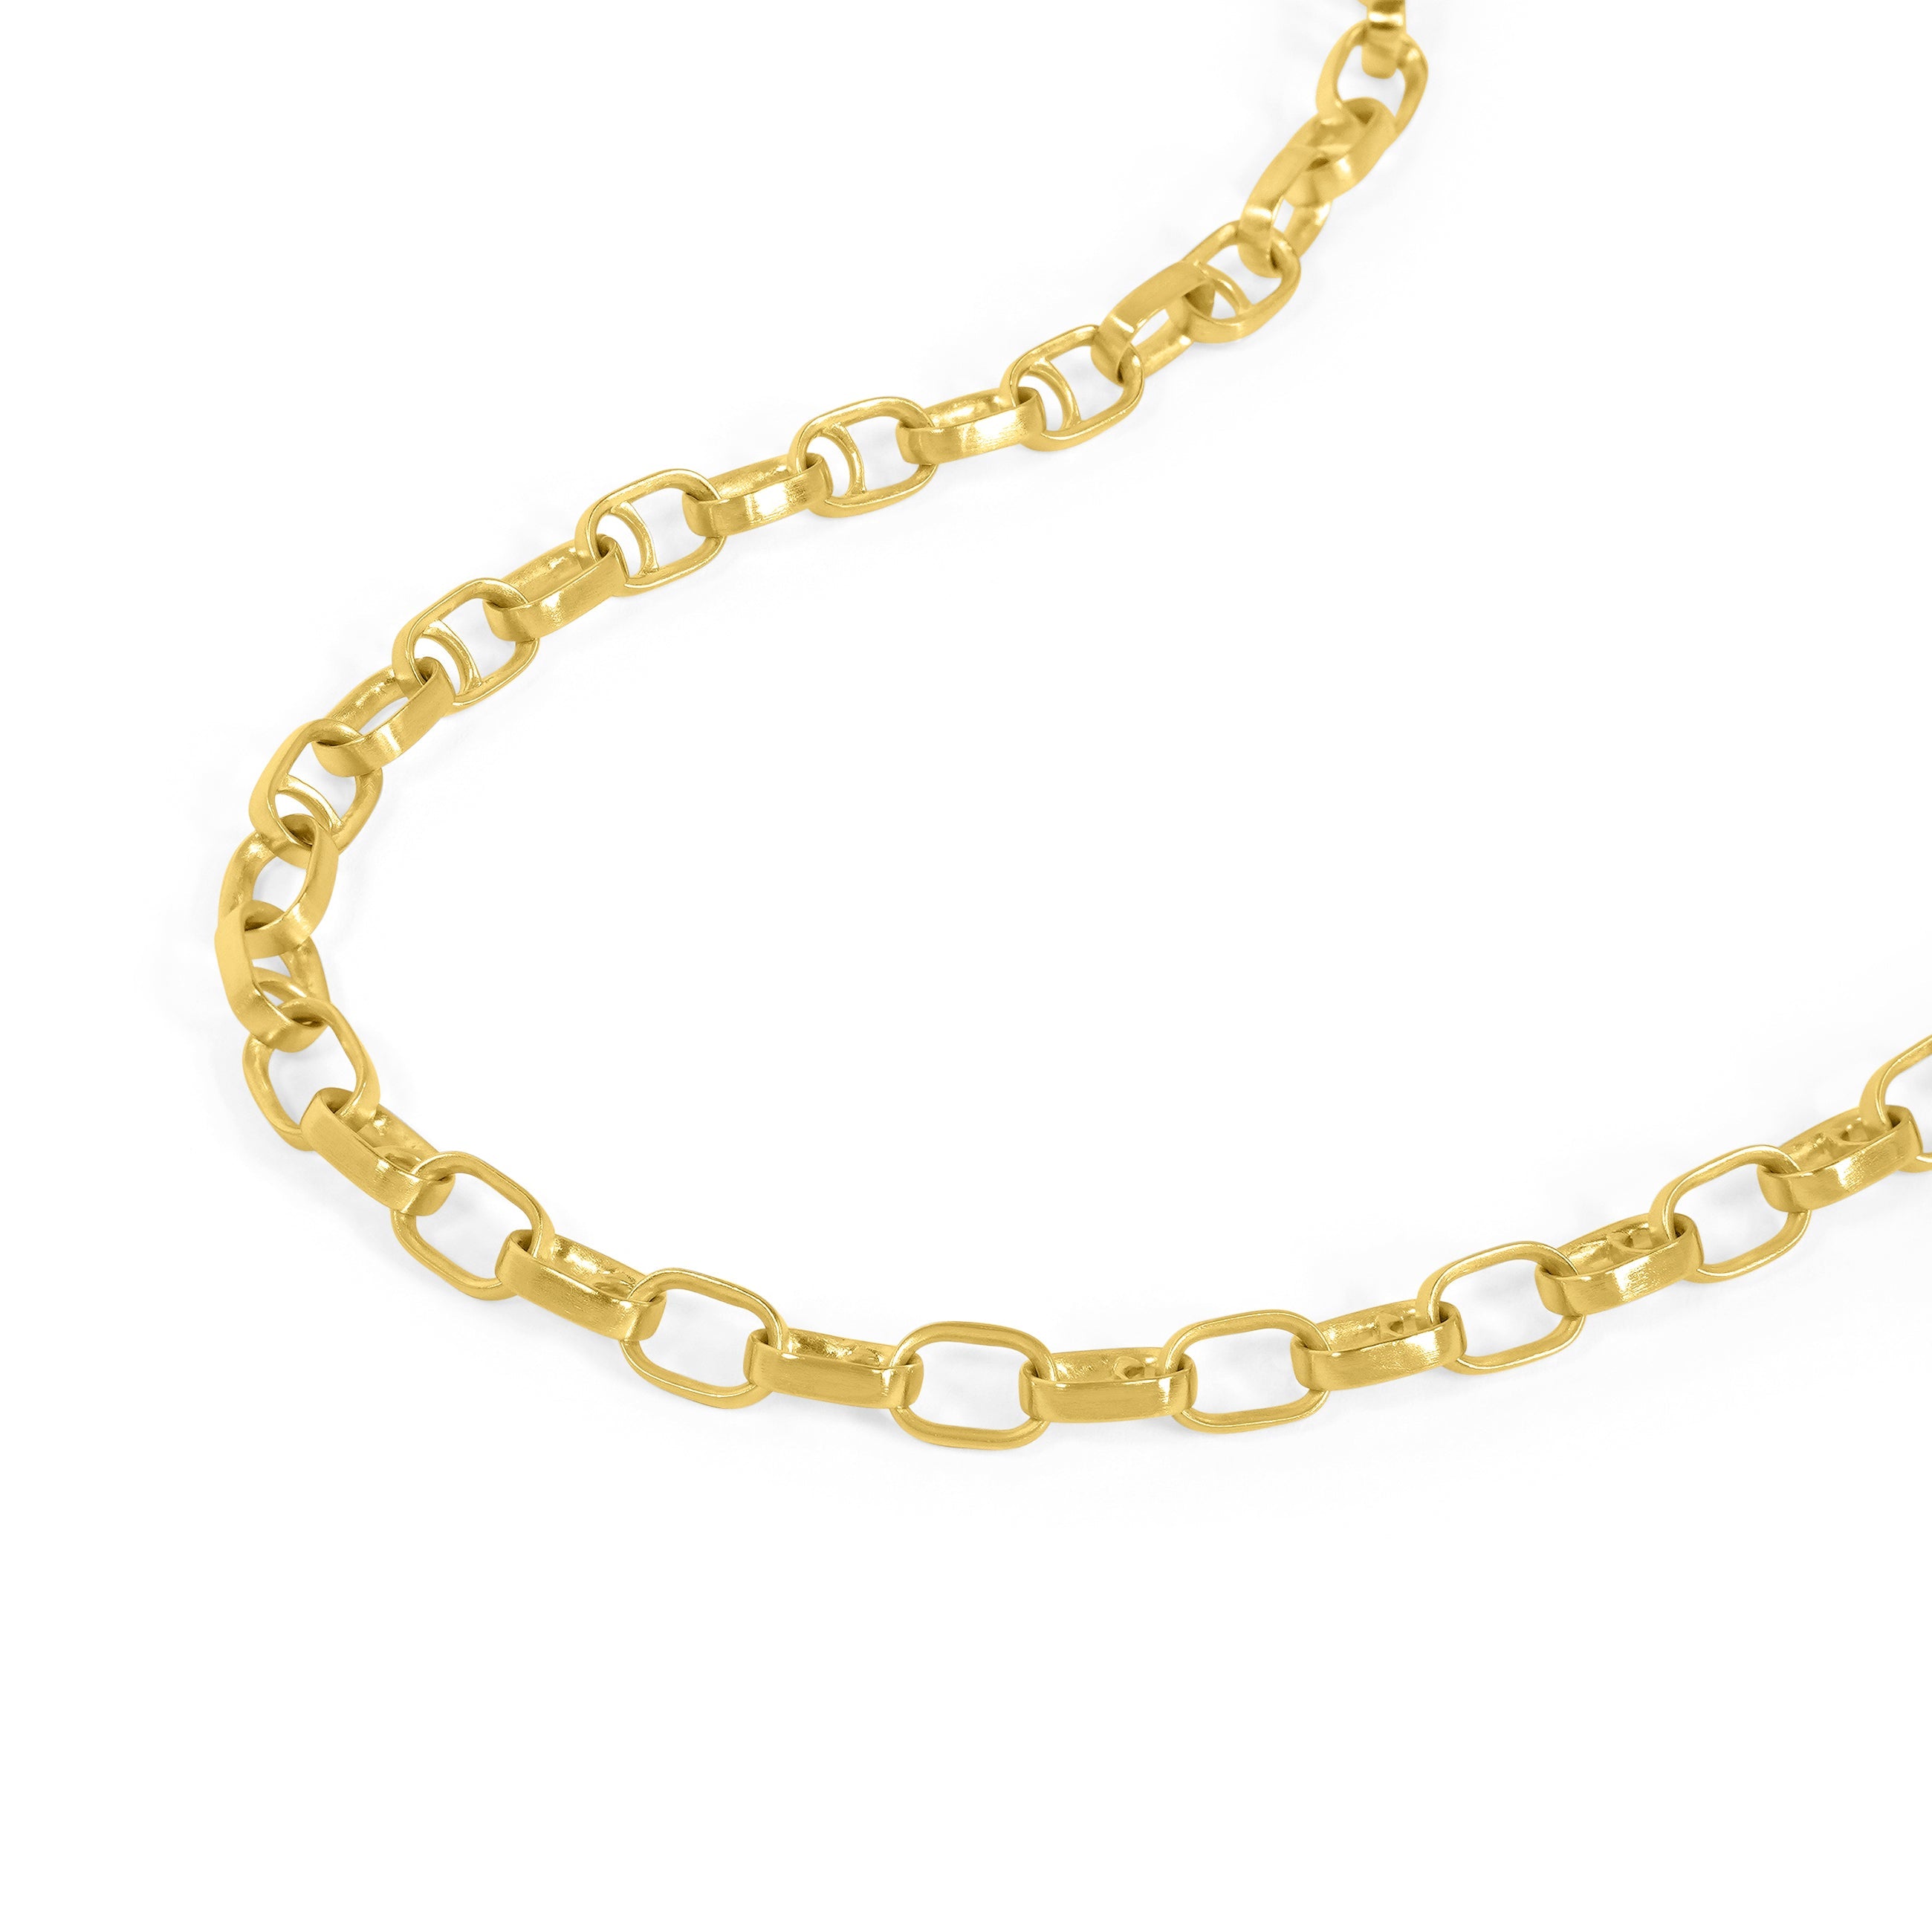 Dean Davidson - Manhattan Necklace in Gold